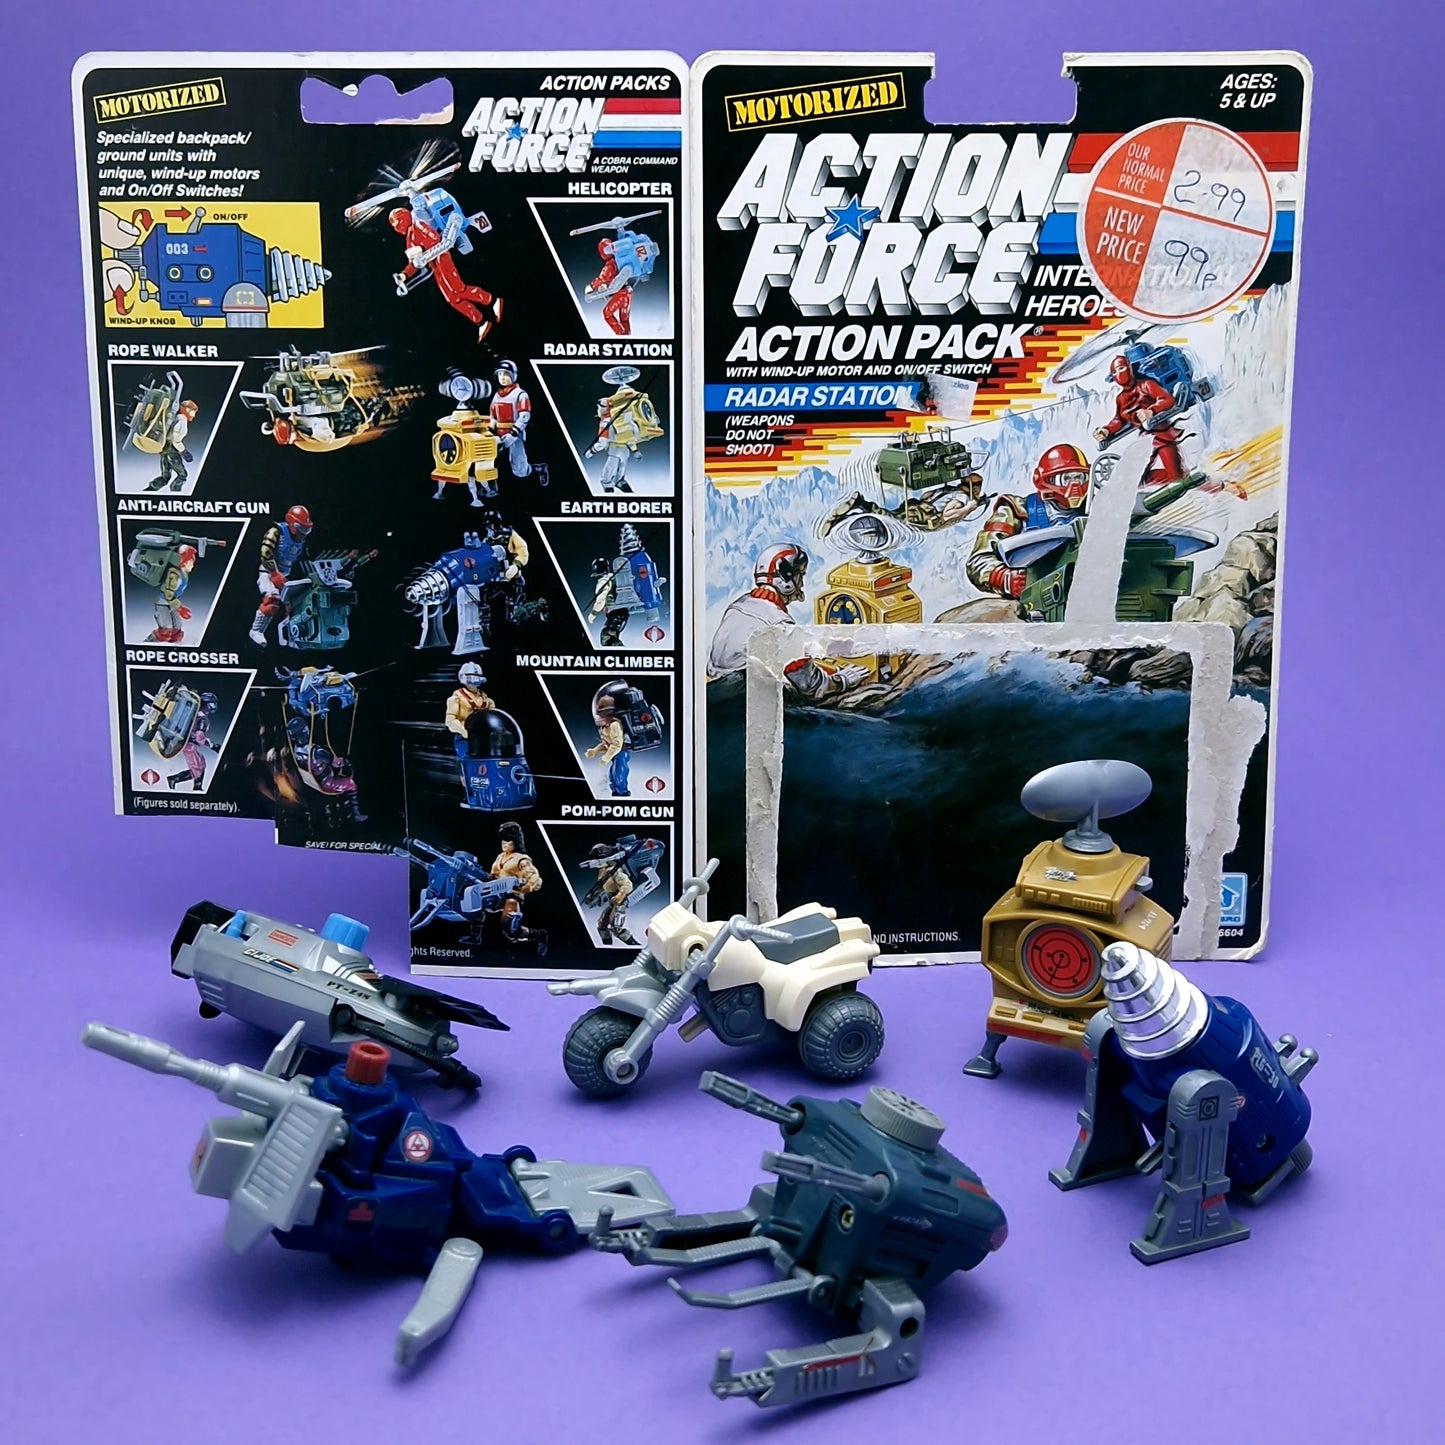 ACTION FORCE ☆ Action Packs Motorized Bundle 6x Figure Vehicles ☆ G.I JOE Vintage Palitoy HAsbro